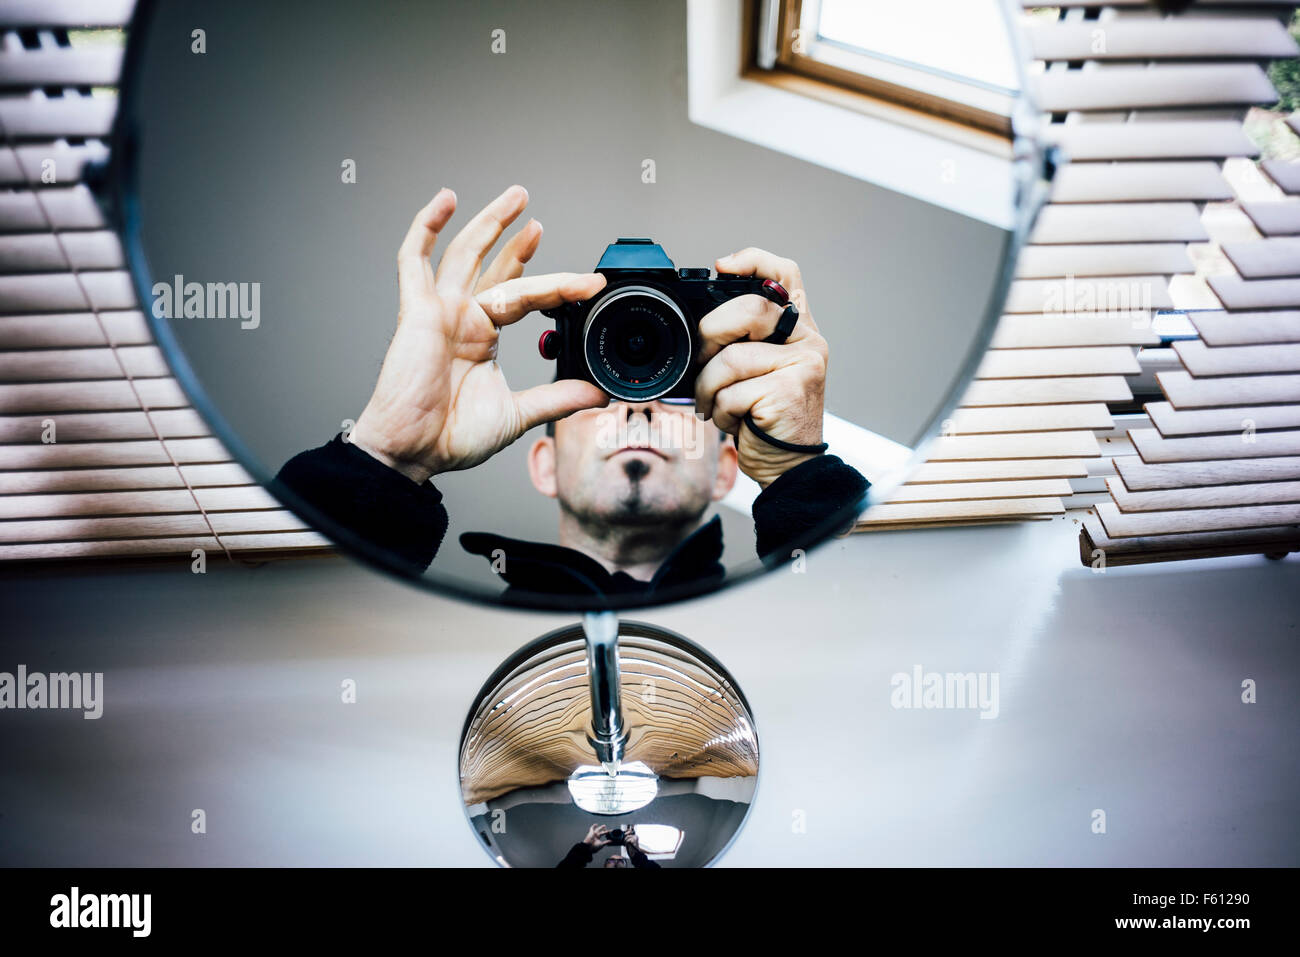 Un photographe faisant son appareil photo à un miroir Banque D'Images